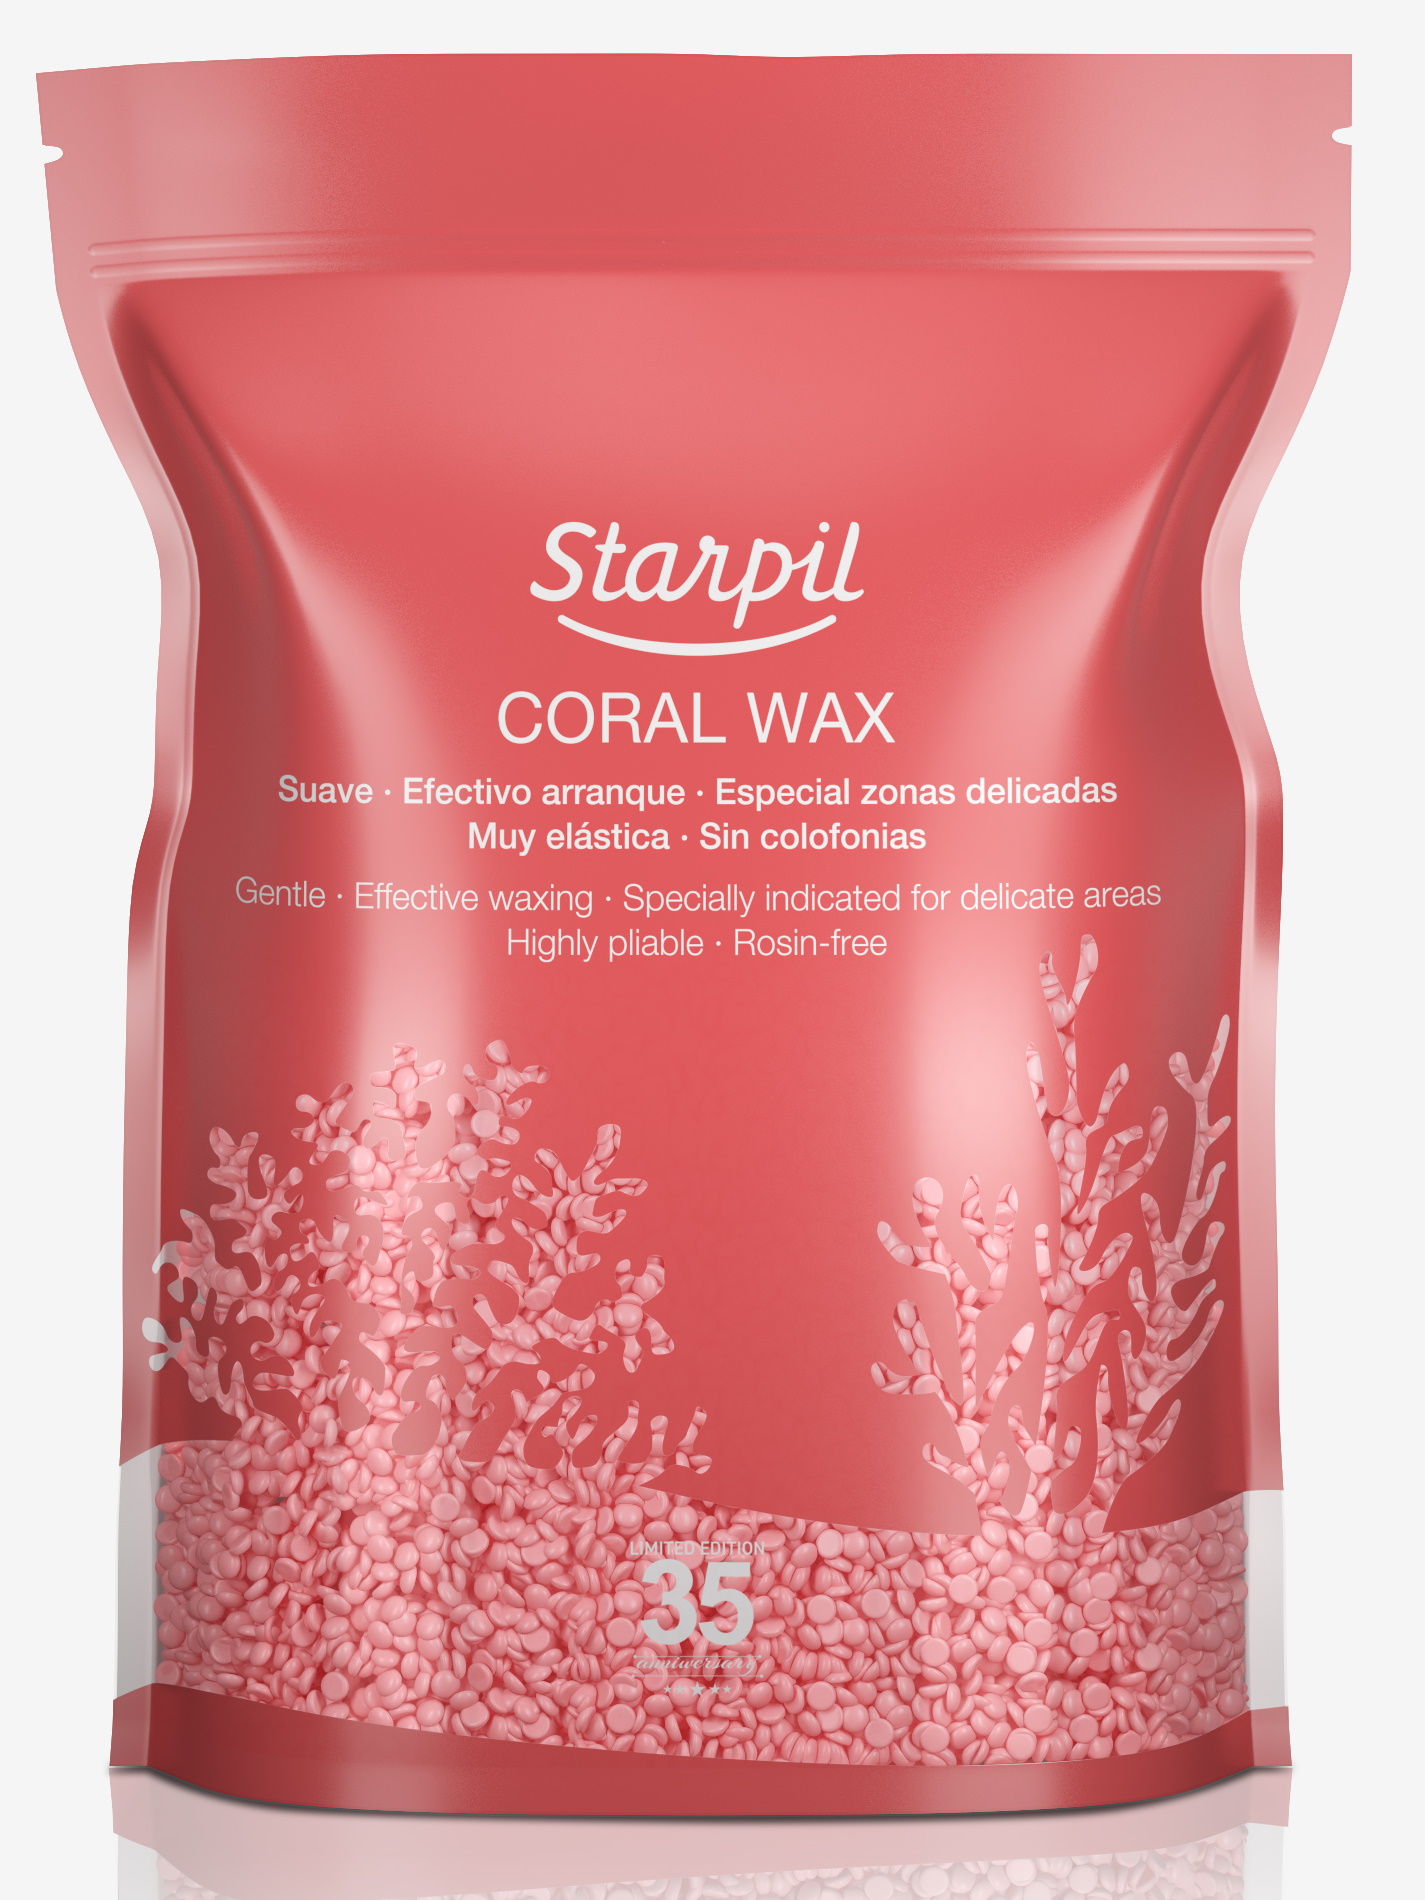 Воск для депиляции STARPIL коралл/coral wax 1000 г воск гранульный сосновая канифоль